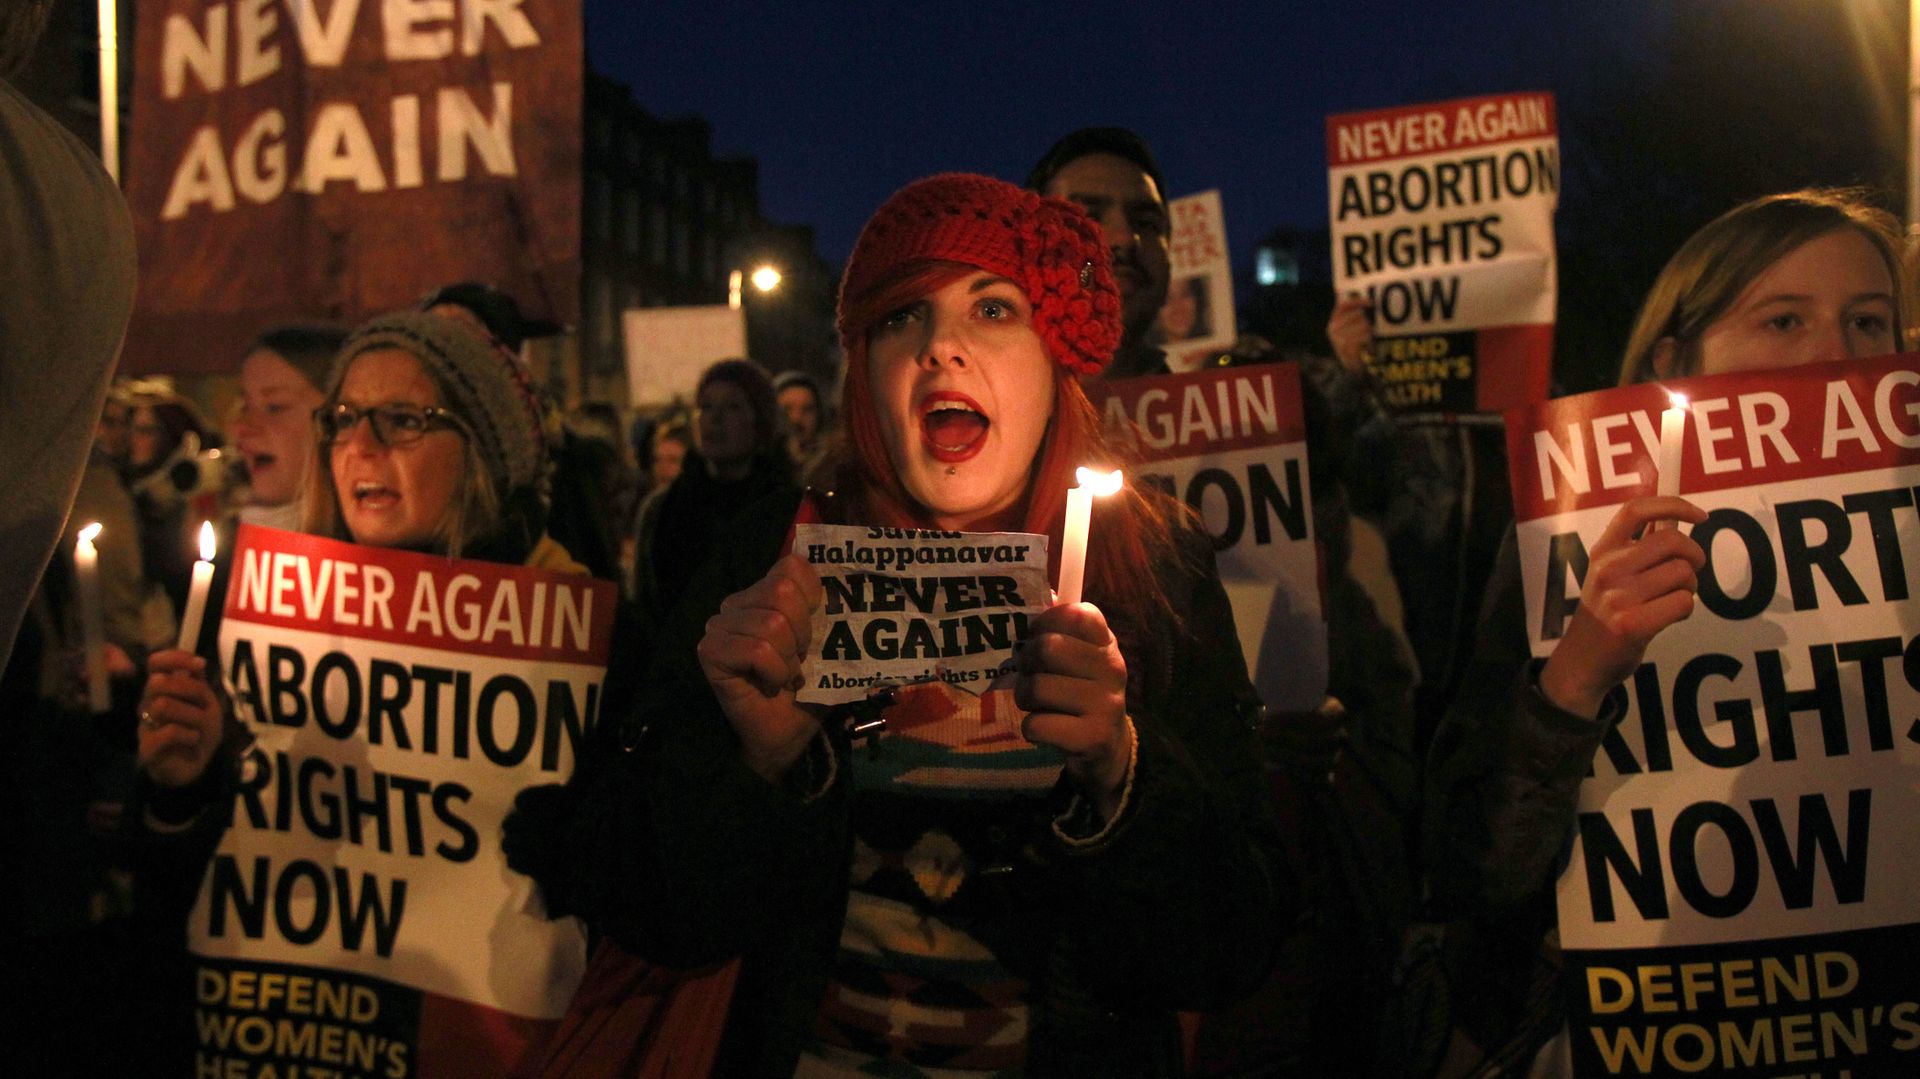 Une manifestation en Irlande, le 17 novembre, pour demander le droit à l'avortement